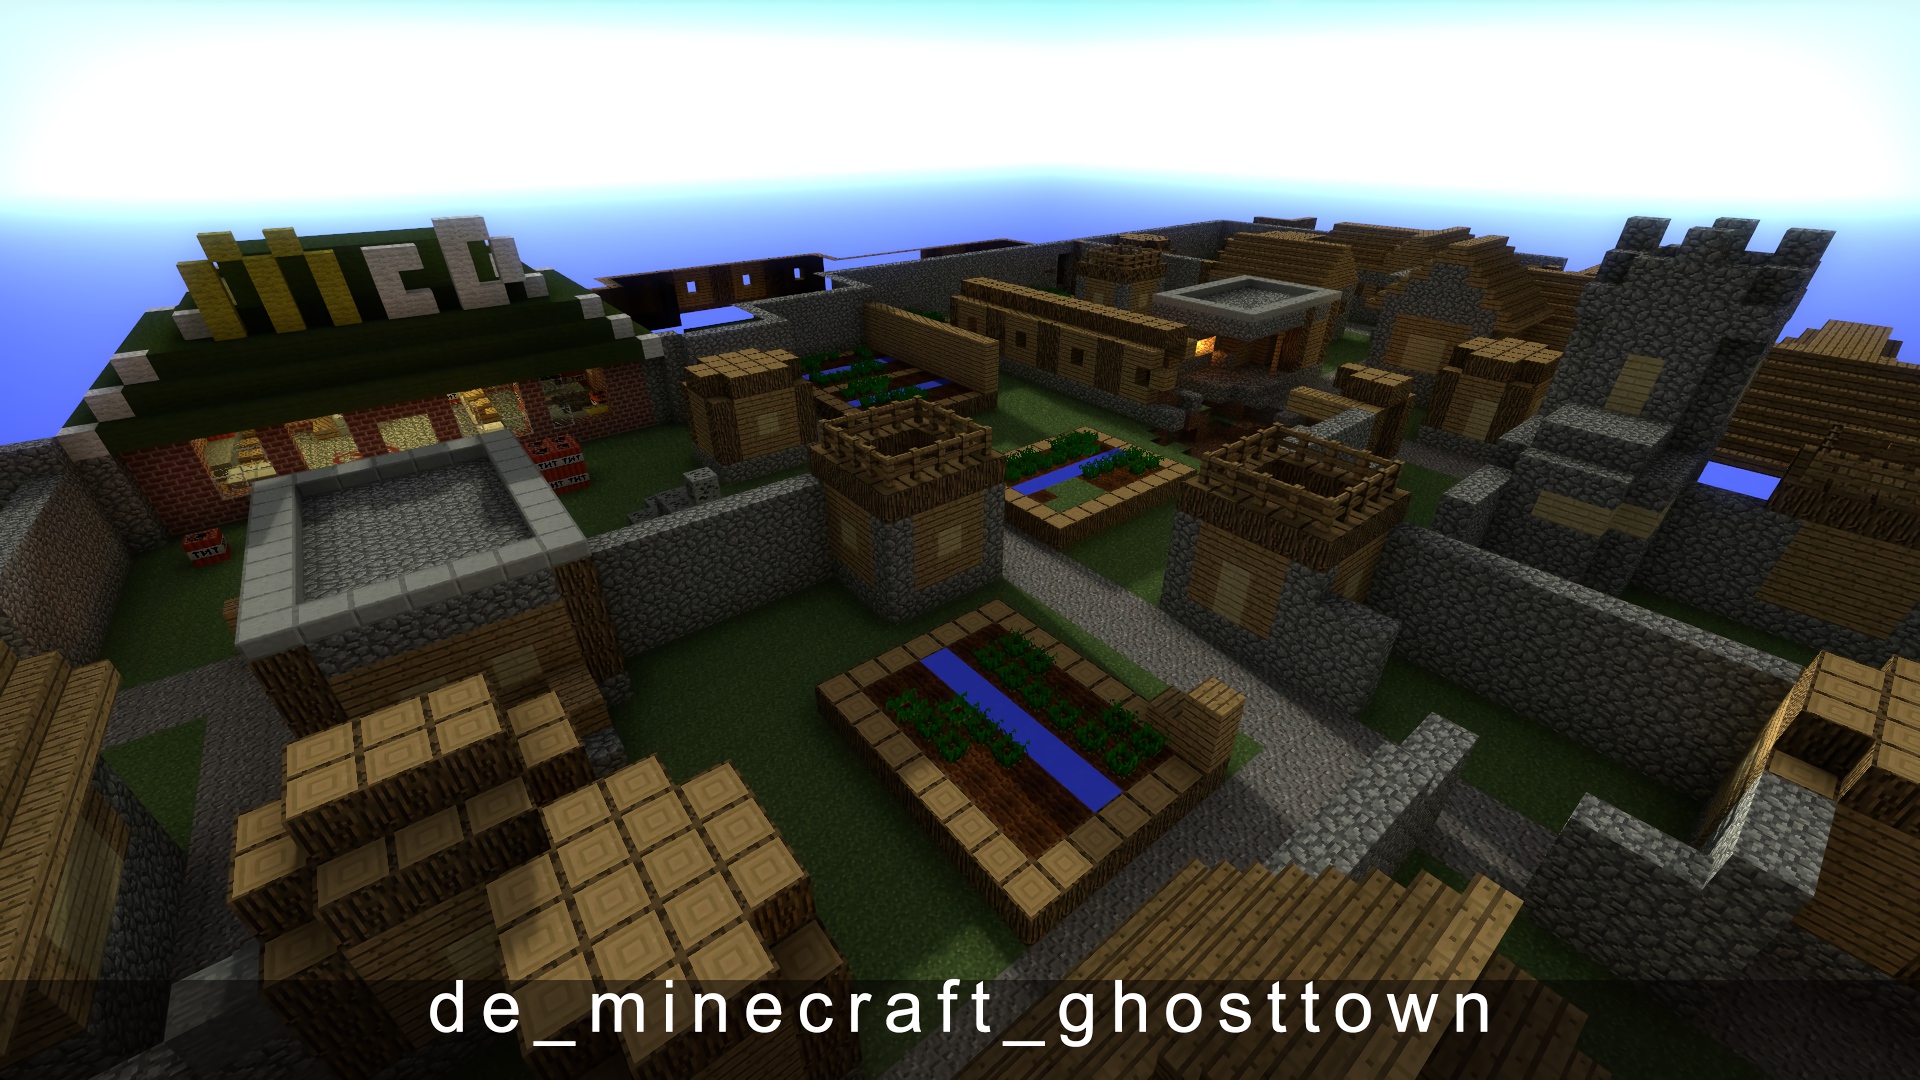 de_minecraft_ghosttown.jpg